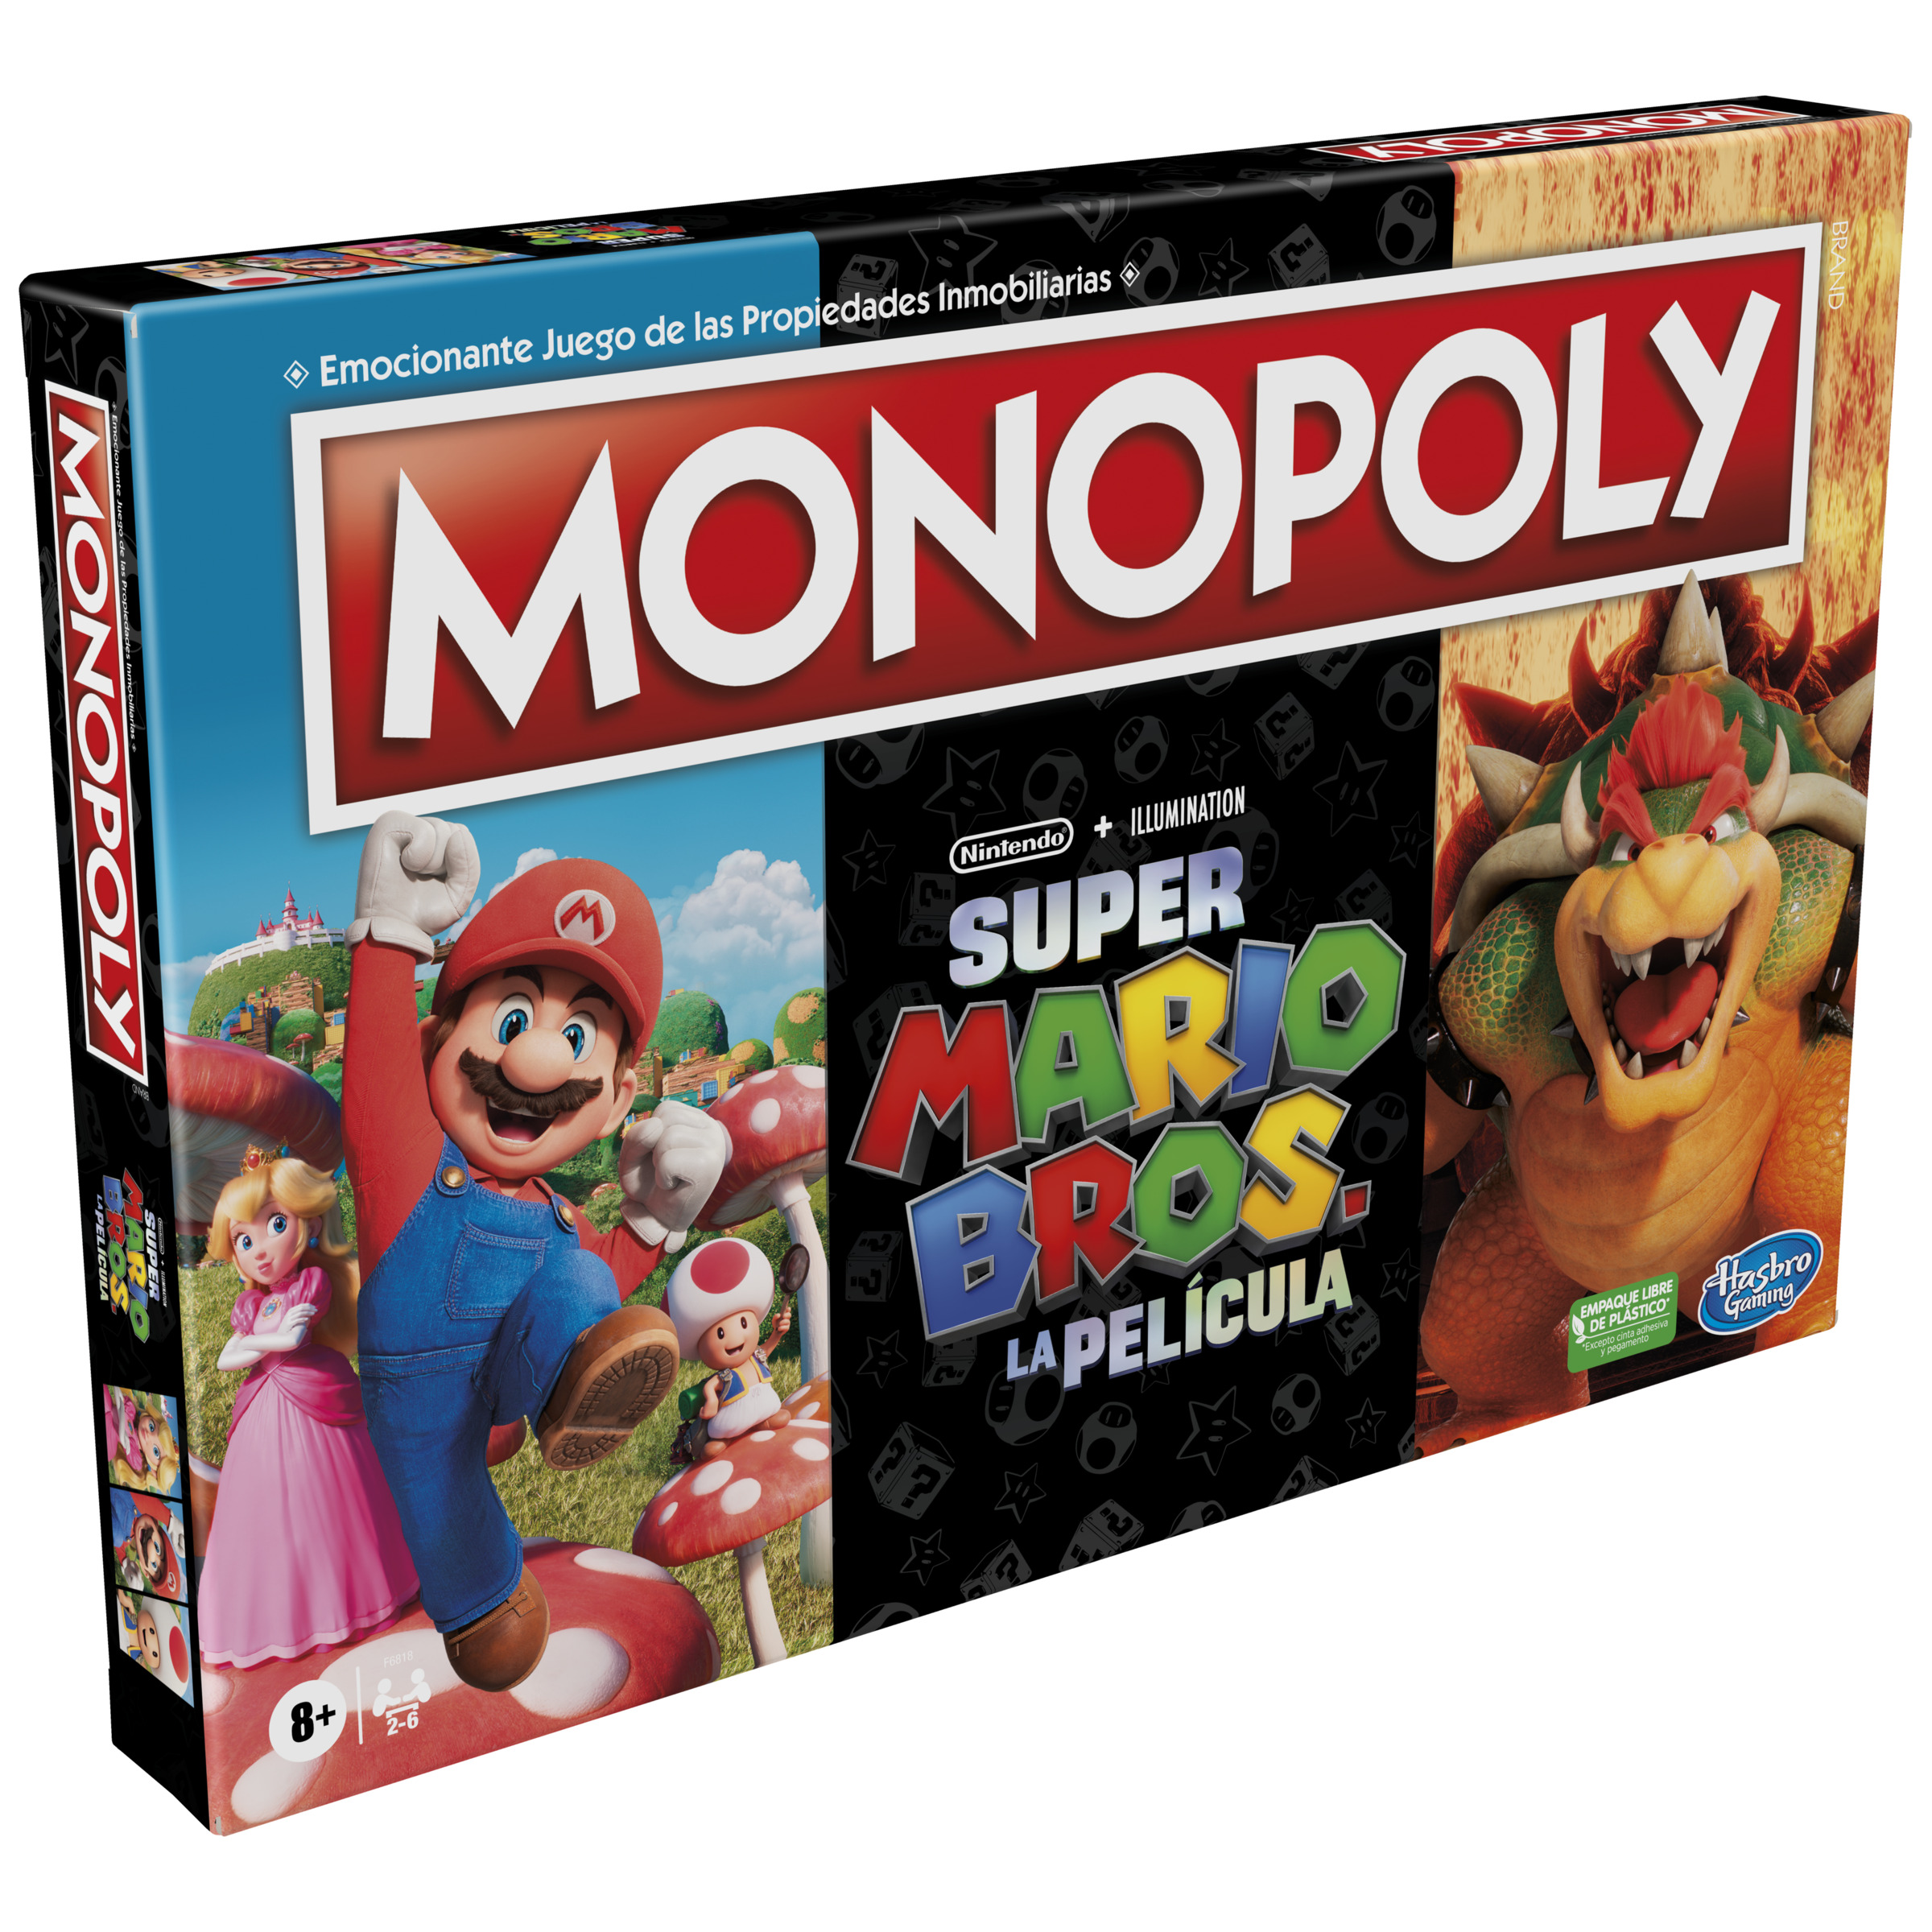 Monopoly Super Mario Bros La Pelicula Juego de Tablero - Tematica Compra/Venta/Videojuegos - De 2 a 